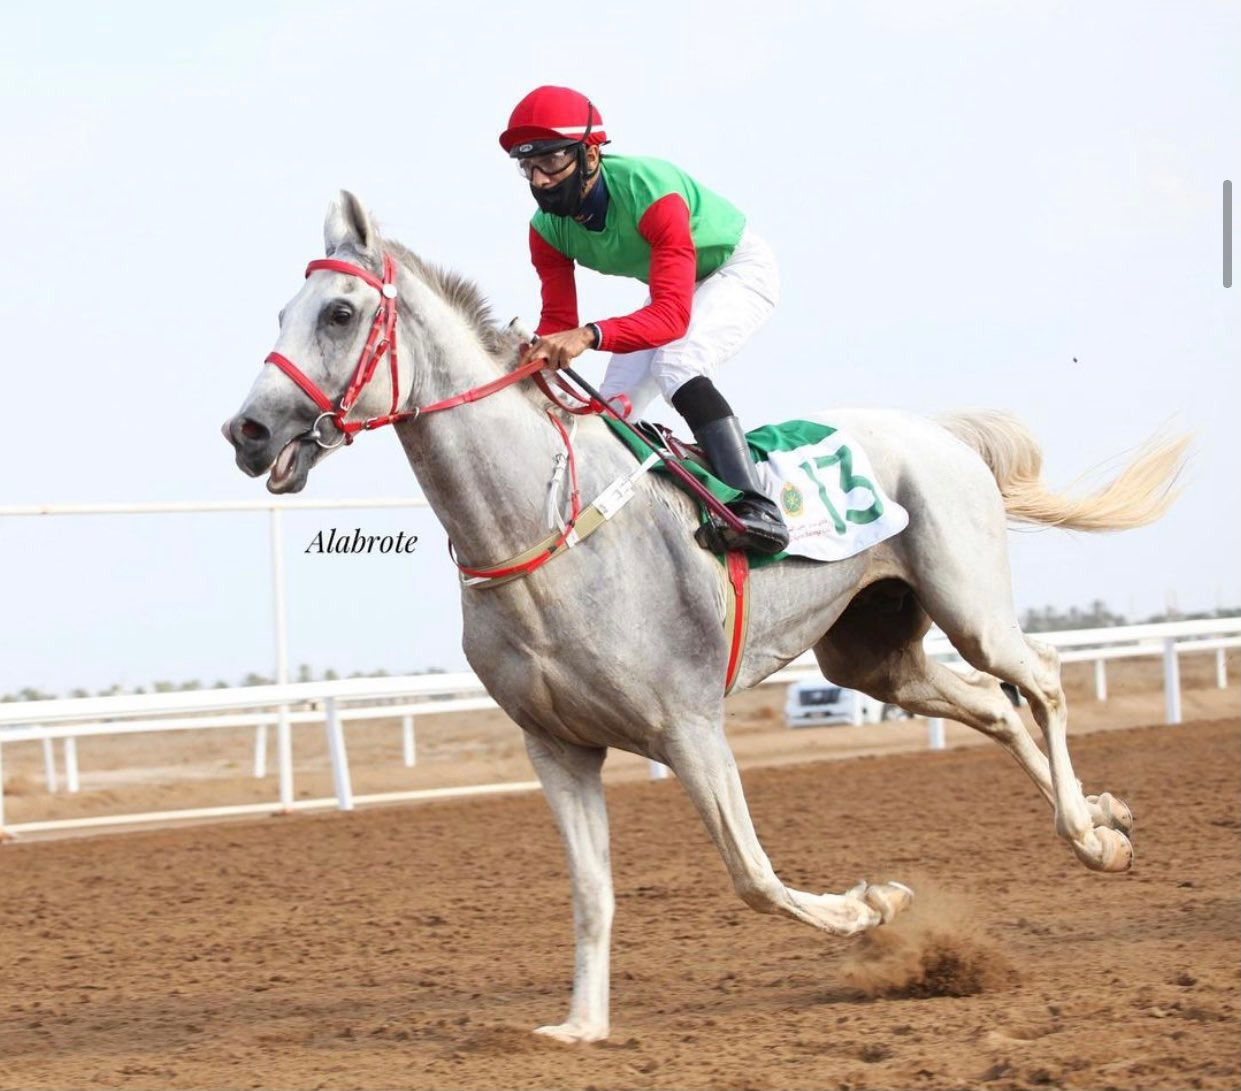  5  معلومات عن الحصان الربع الخالي بطل كأس التعاون الخليجي